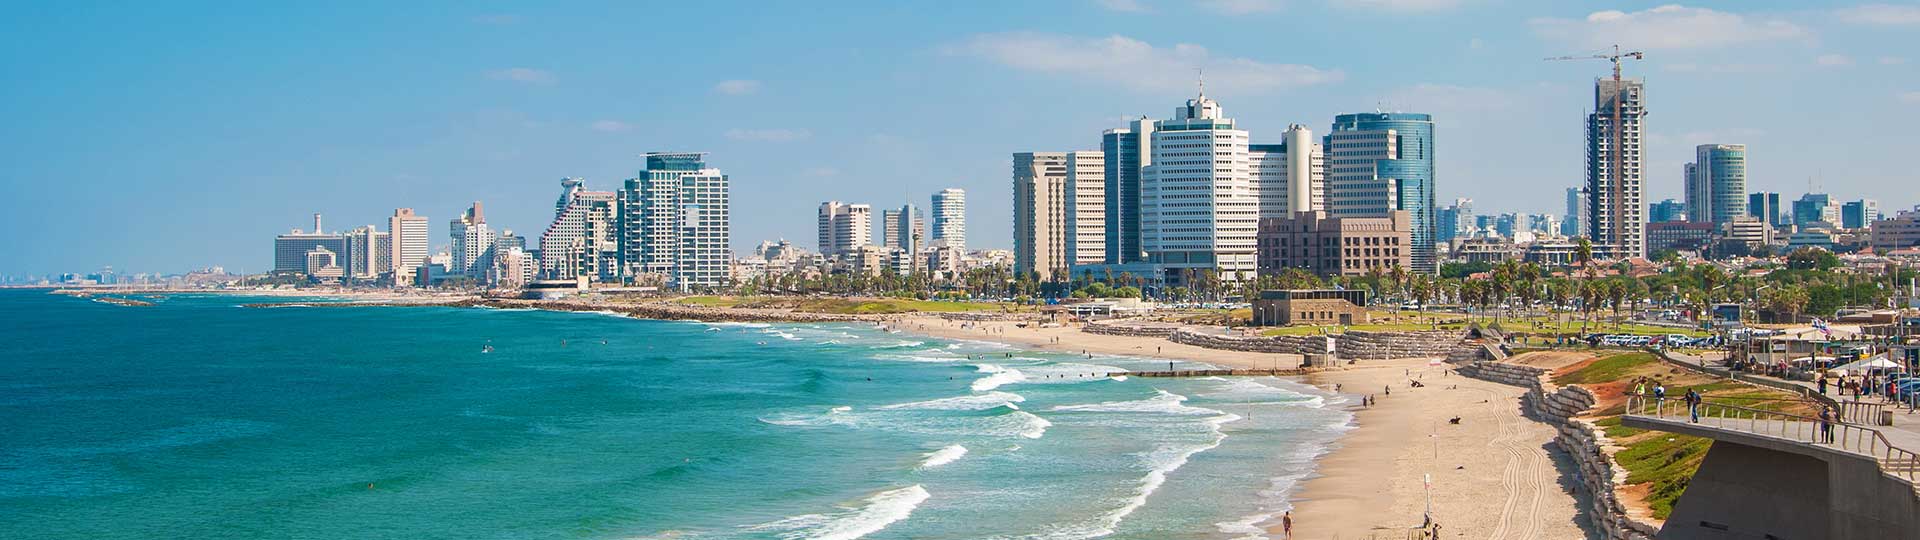 דירות יוקרה בתל אביב